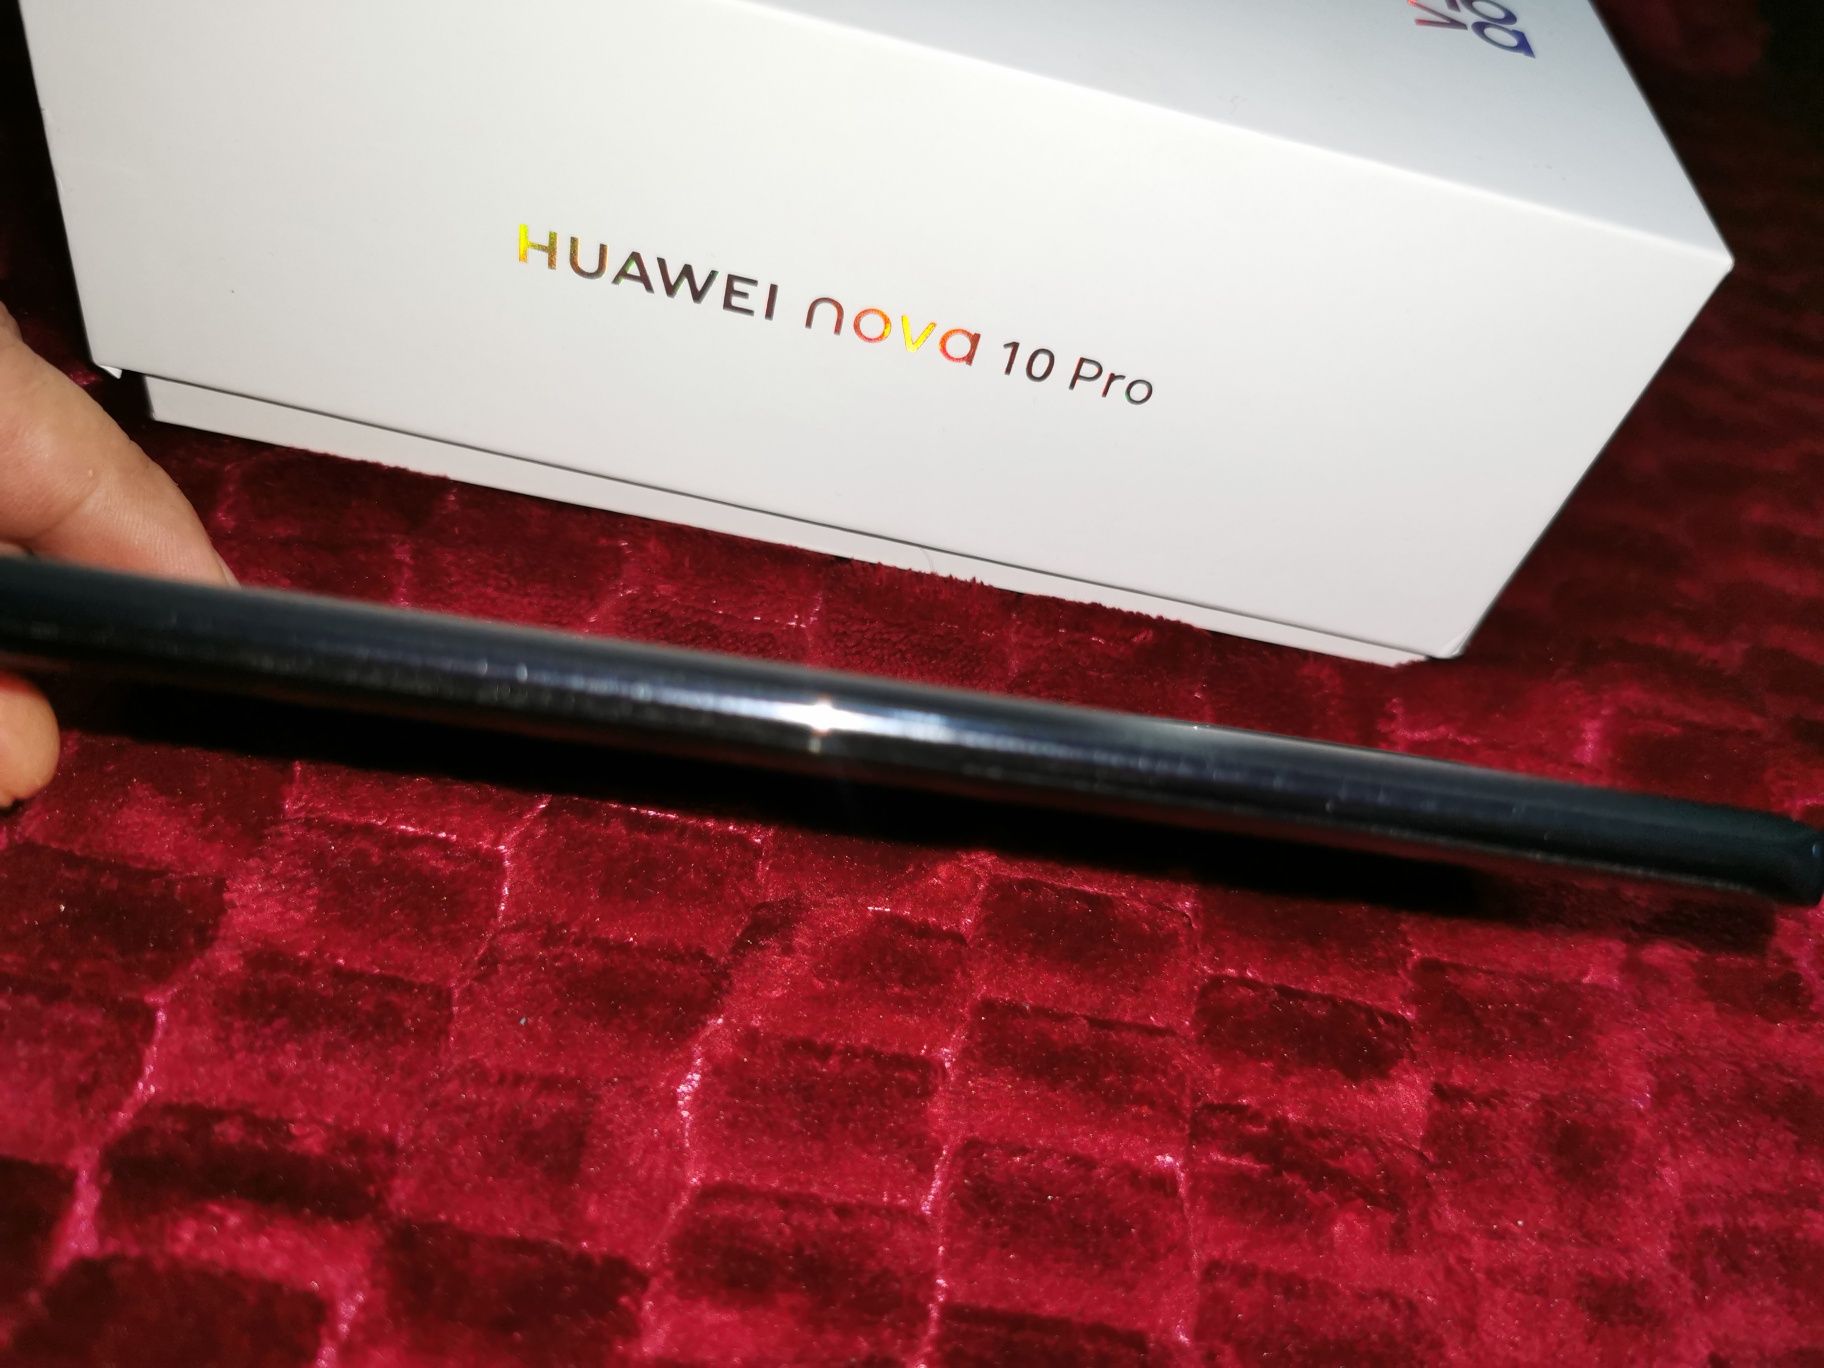 Huawei Nova 10 Pro, Dual SIM, 8GB RAM, 256GB, 4G, Starry Black